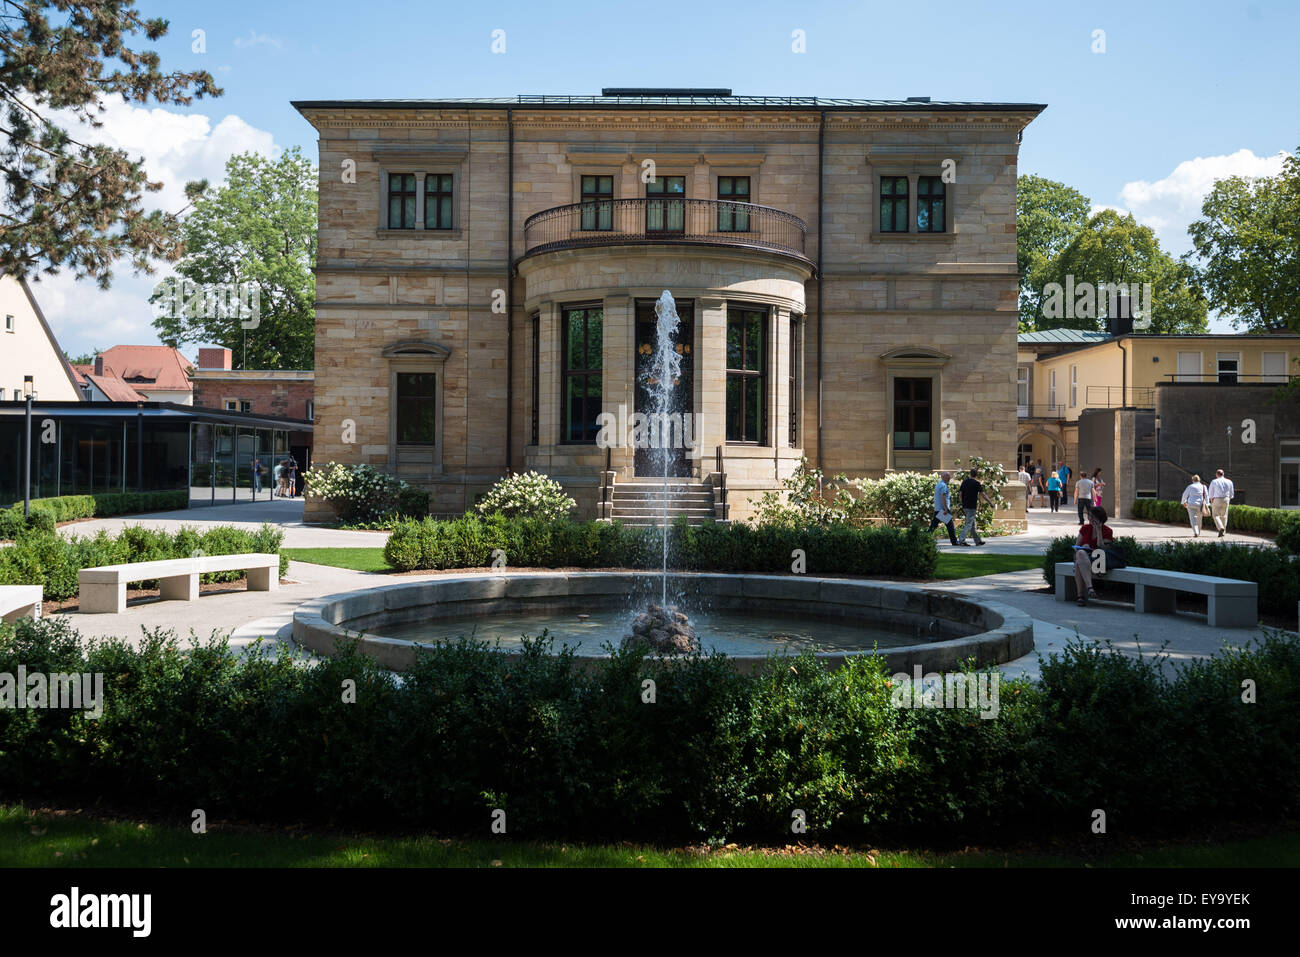 Le compositeur Richard Wagner's home dans le sud de la ville allemande de Bayreuth est montré vendredi avant la réouverture du Musée le dimanche après l'agrandissement et de rénovation. Afp/NICOLAS ARMER Banque D'Images